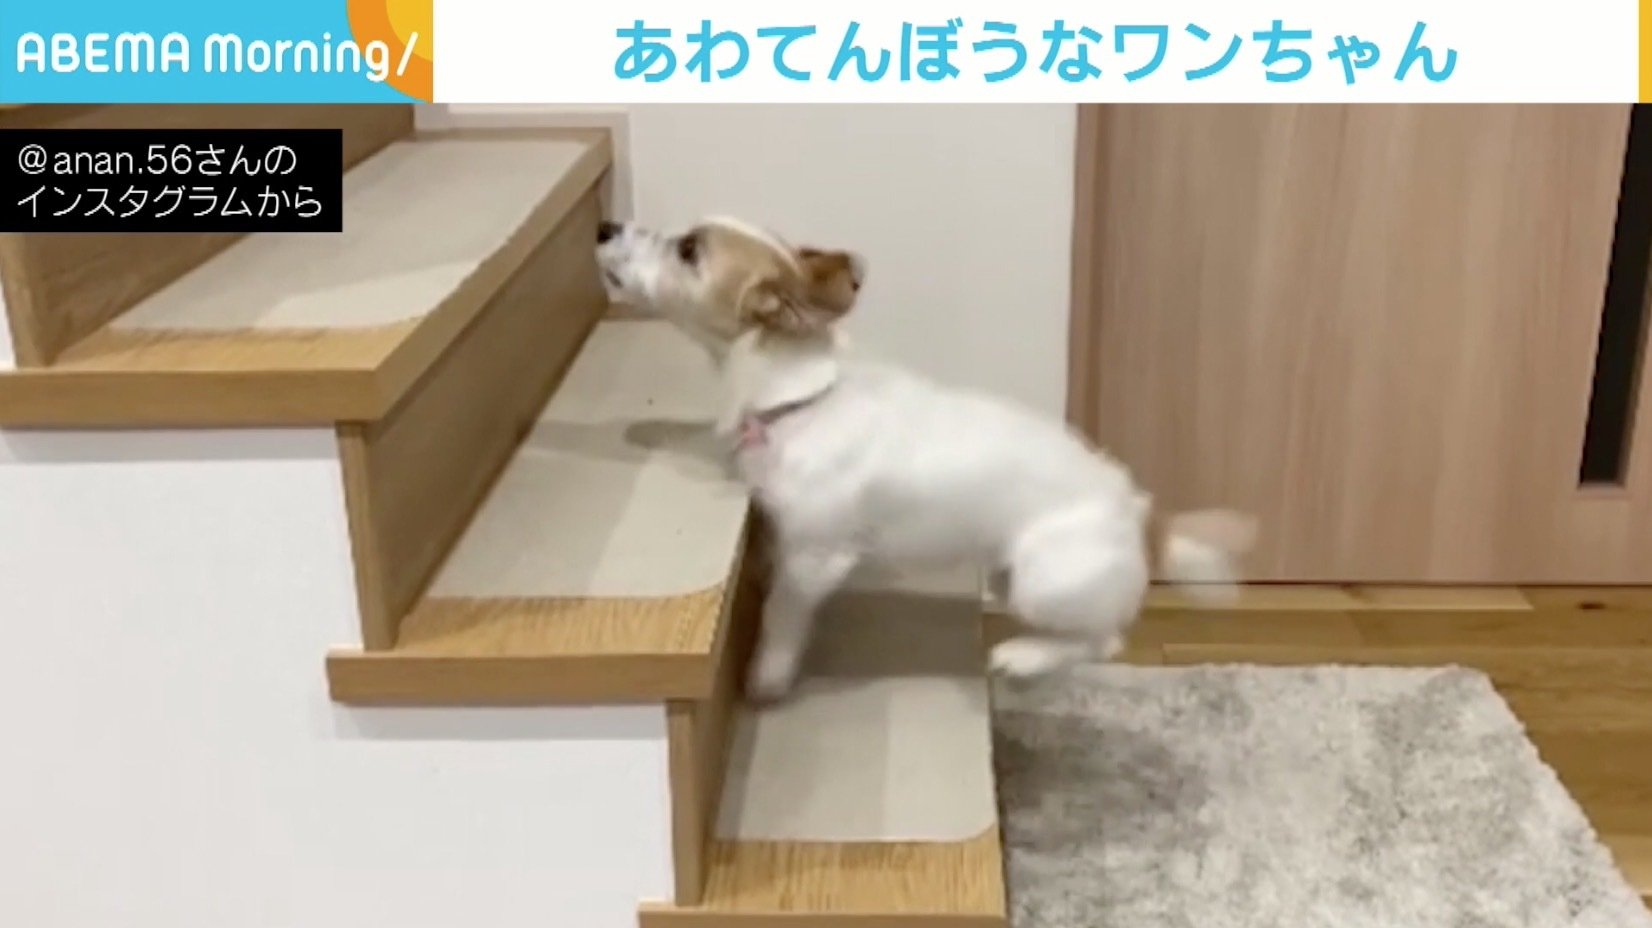 テンションが上がりすぎて階段が上れない ぴょんぴょん跳ねる犬に反響 ニコニコニュース